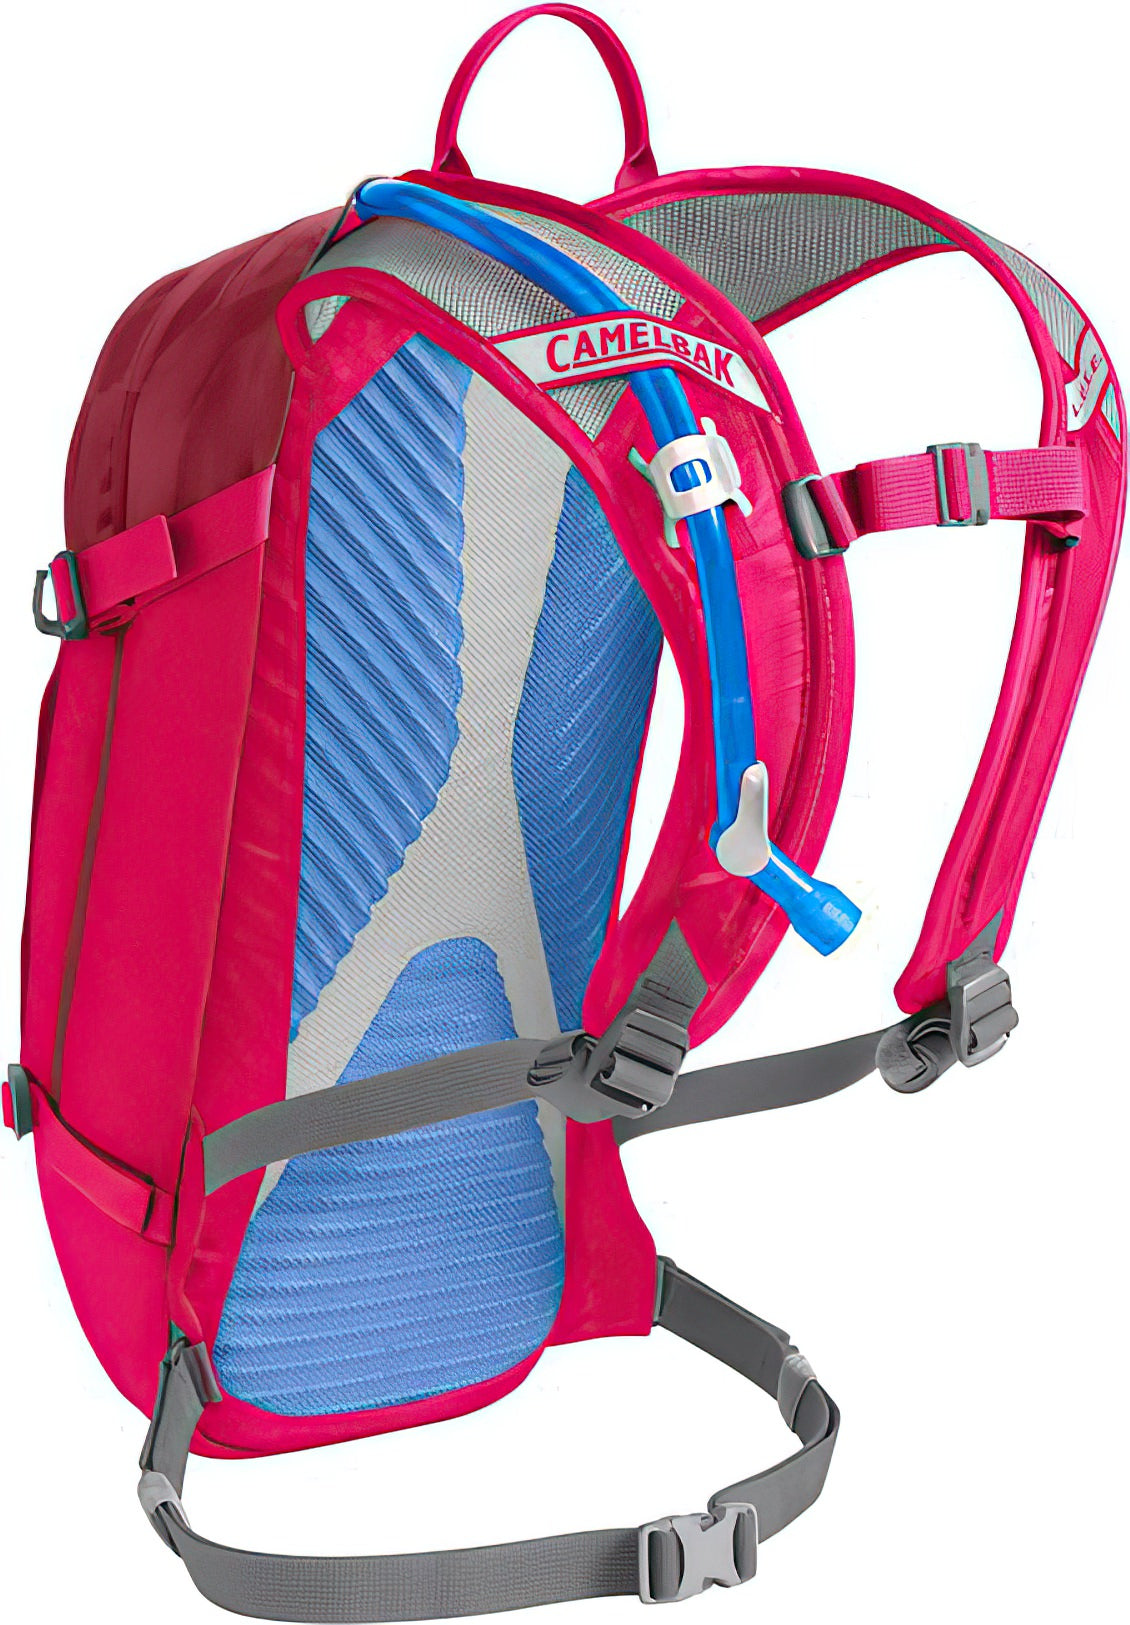 Camelbak Skeeter Pink White Gray Kids Hydration Pack Camelback backpack Bag